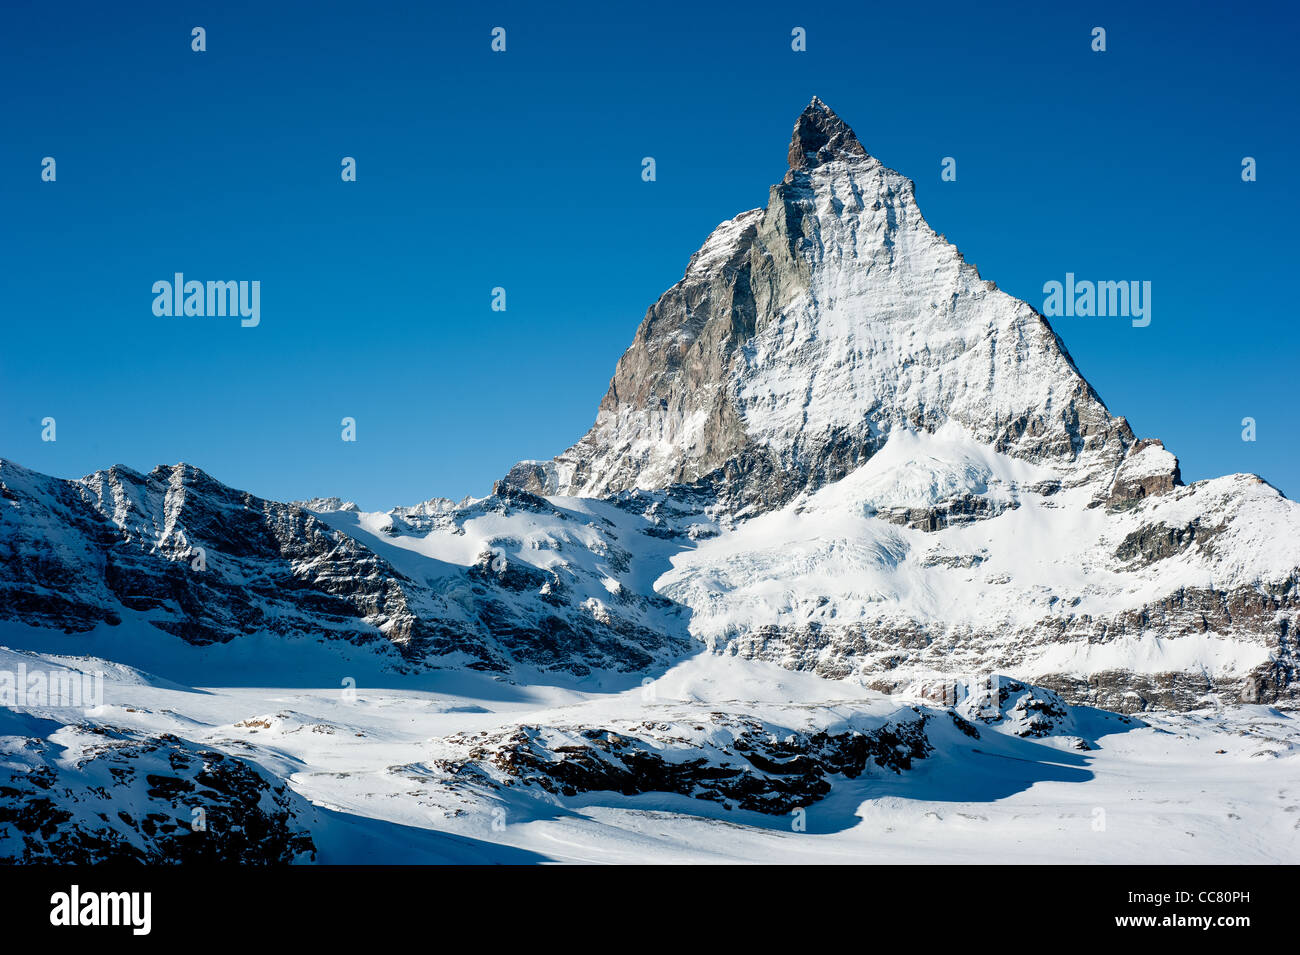 Matterhorn in Winter, view from Trockener Steg, Zermatt, Switzerland Stock Photo